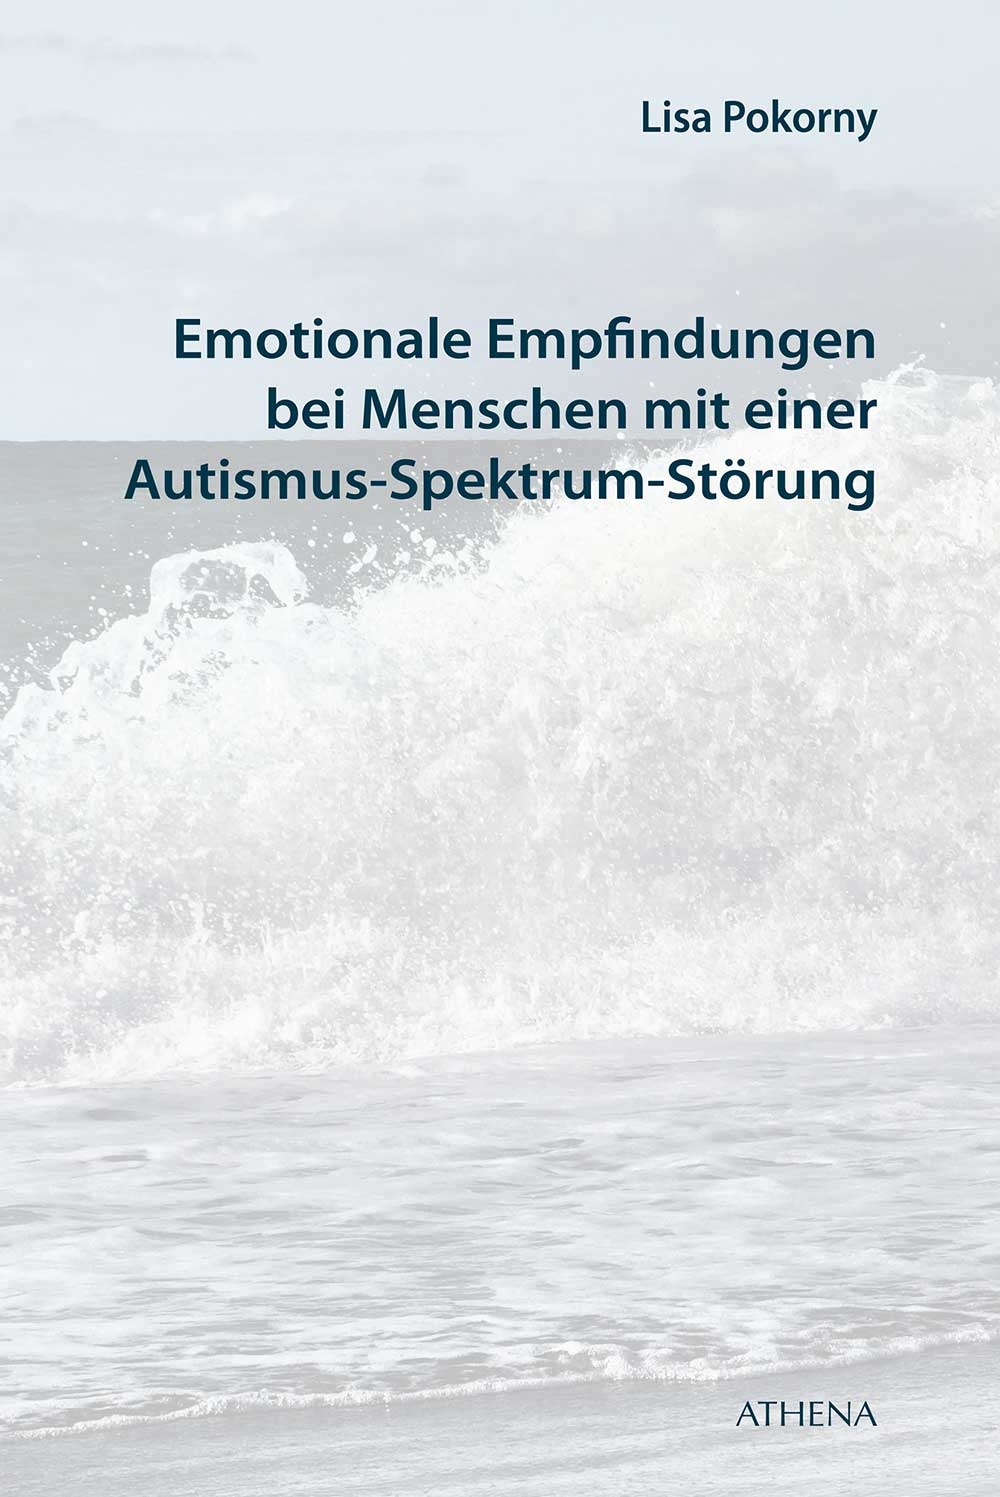 Emotionale Empfindungen bei Menschen mit Autismus-Spektrum-Störung